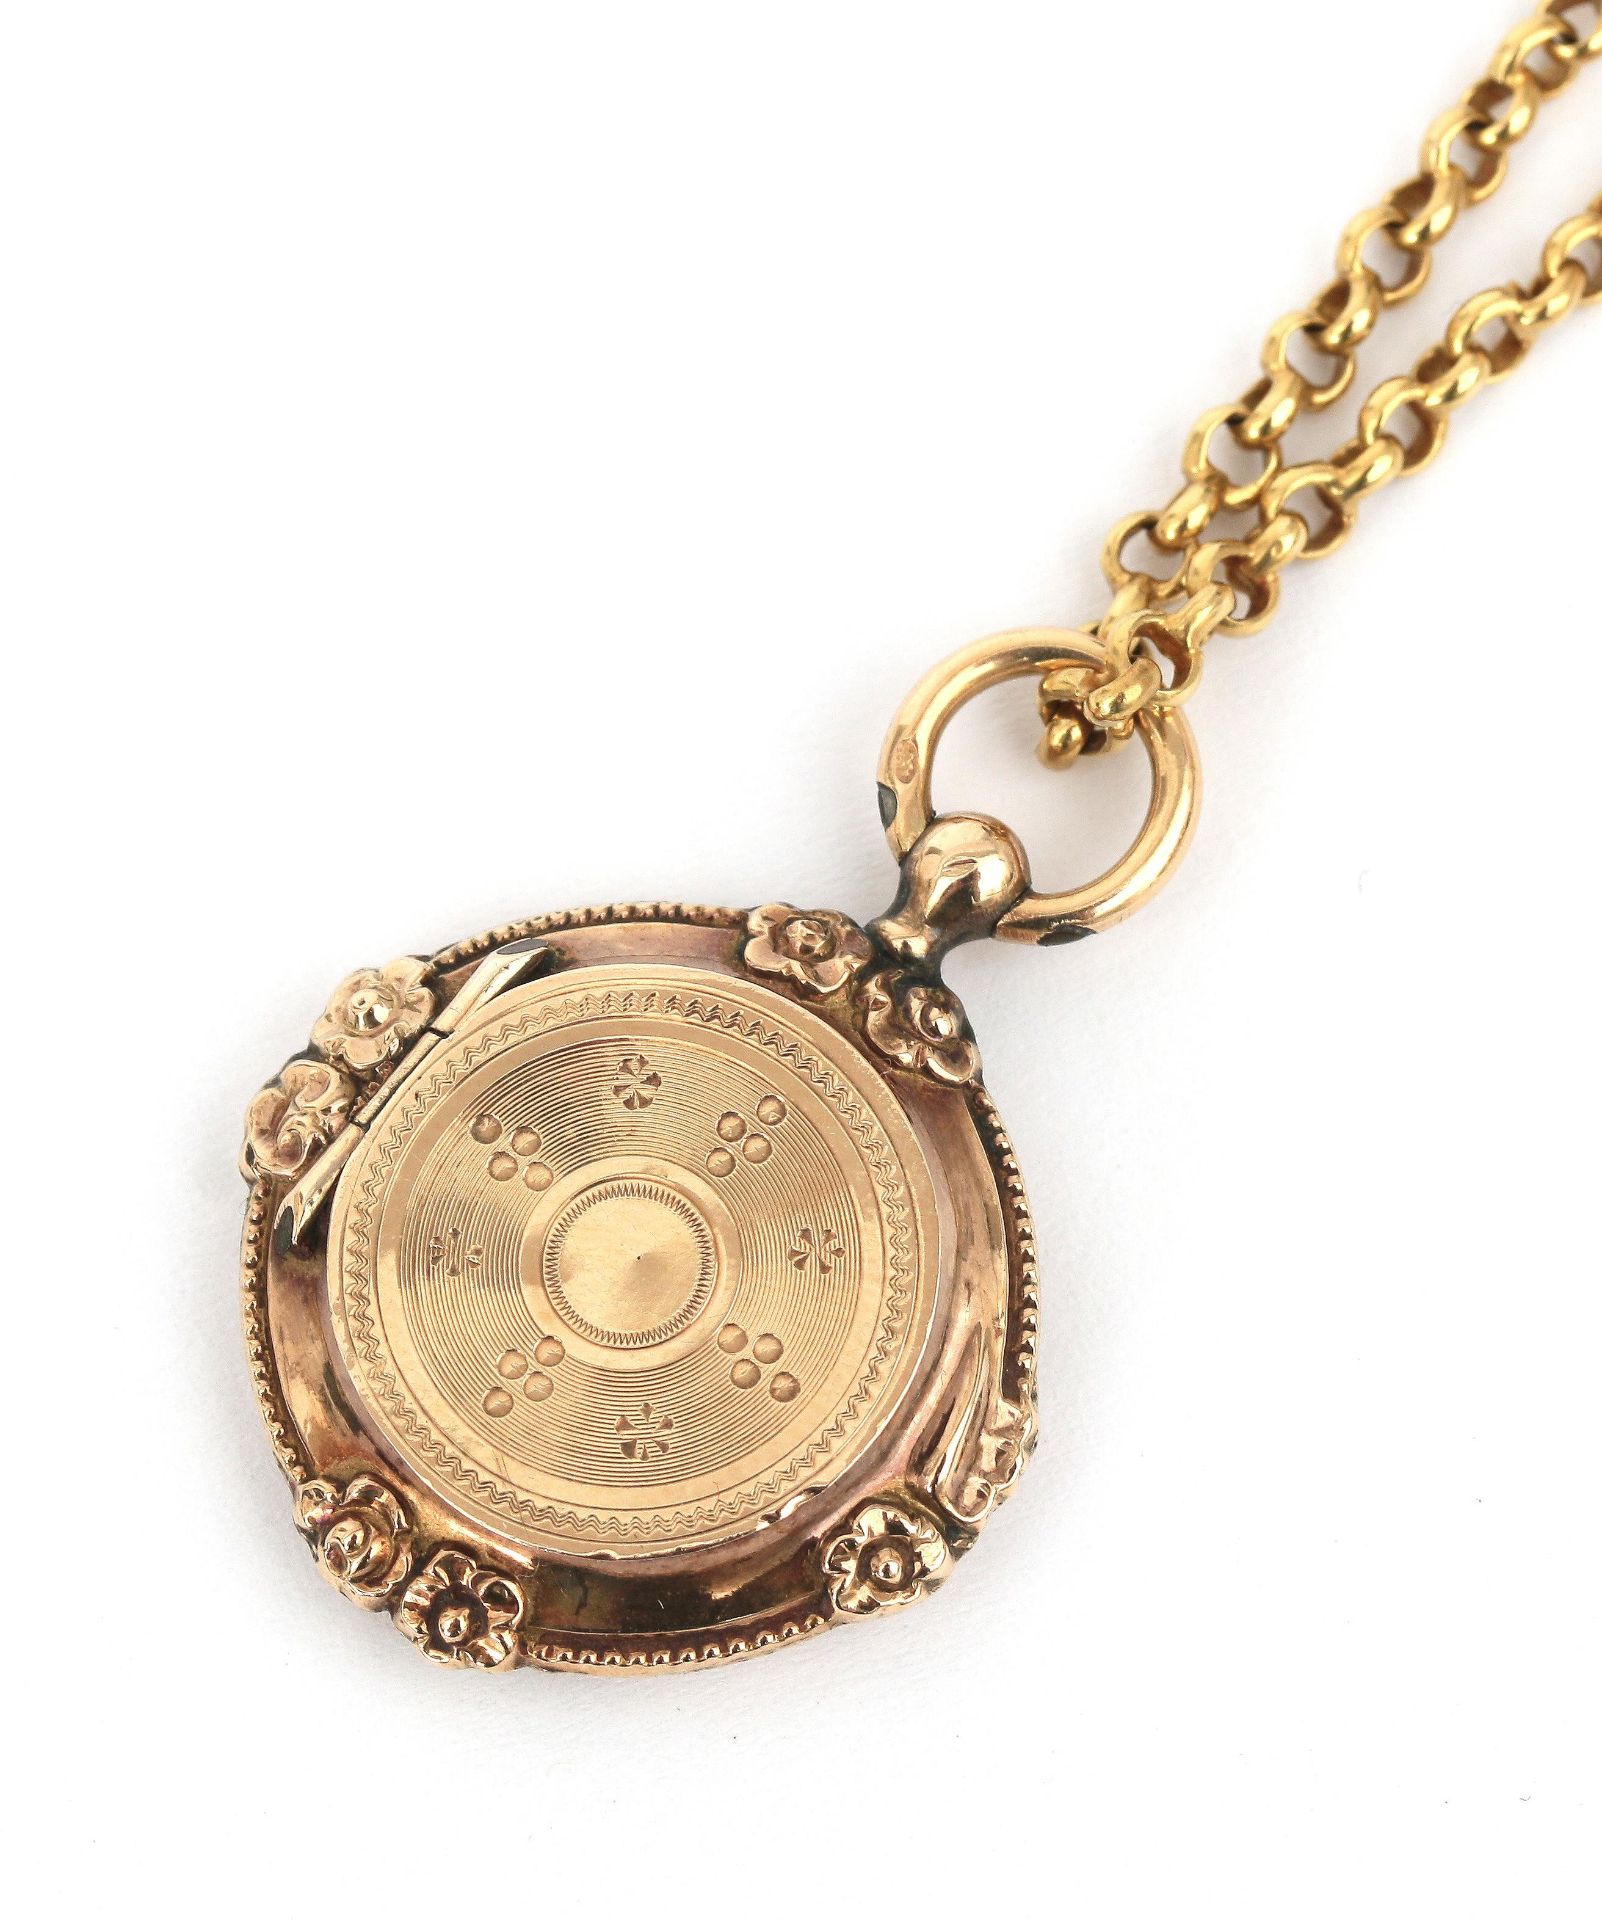 A 14 karat gold belcher necklace and a 14 karat gold locket